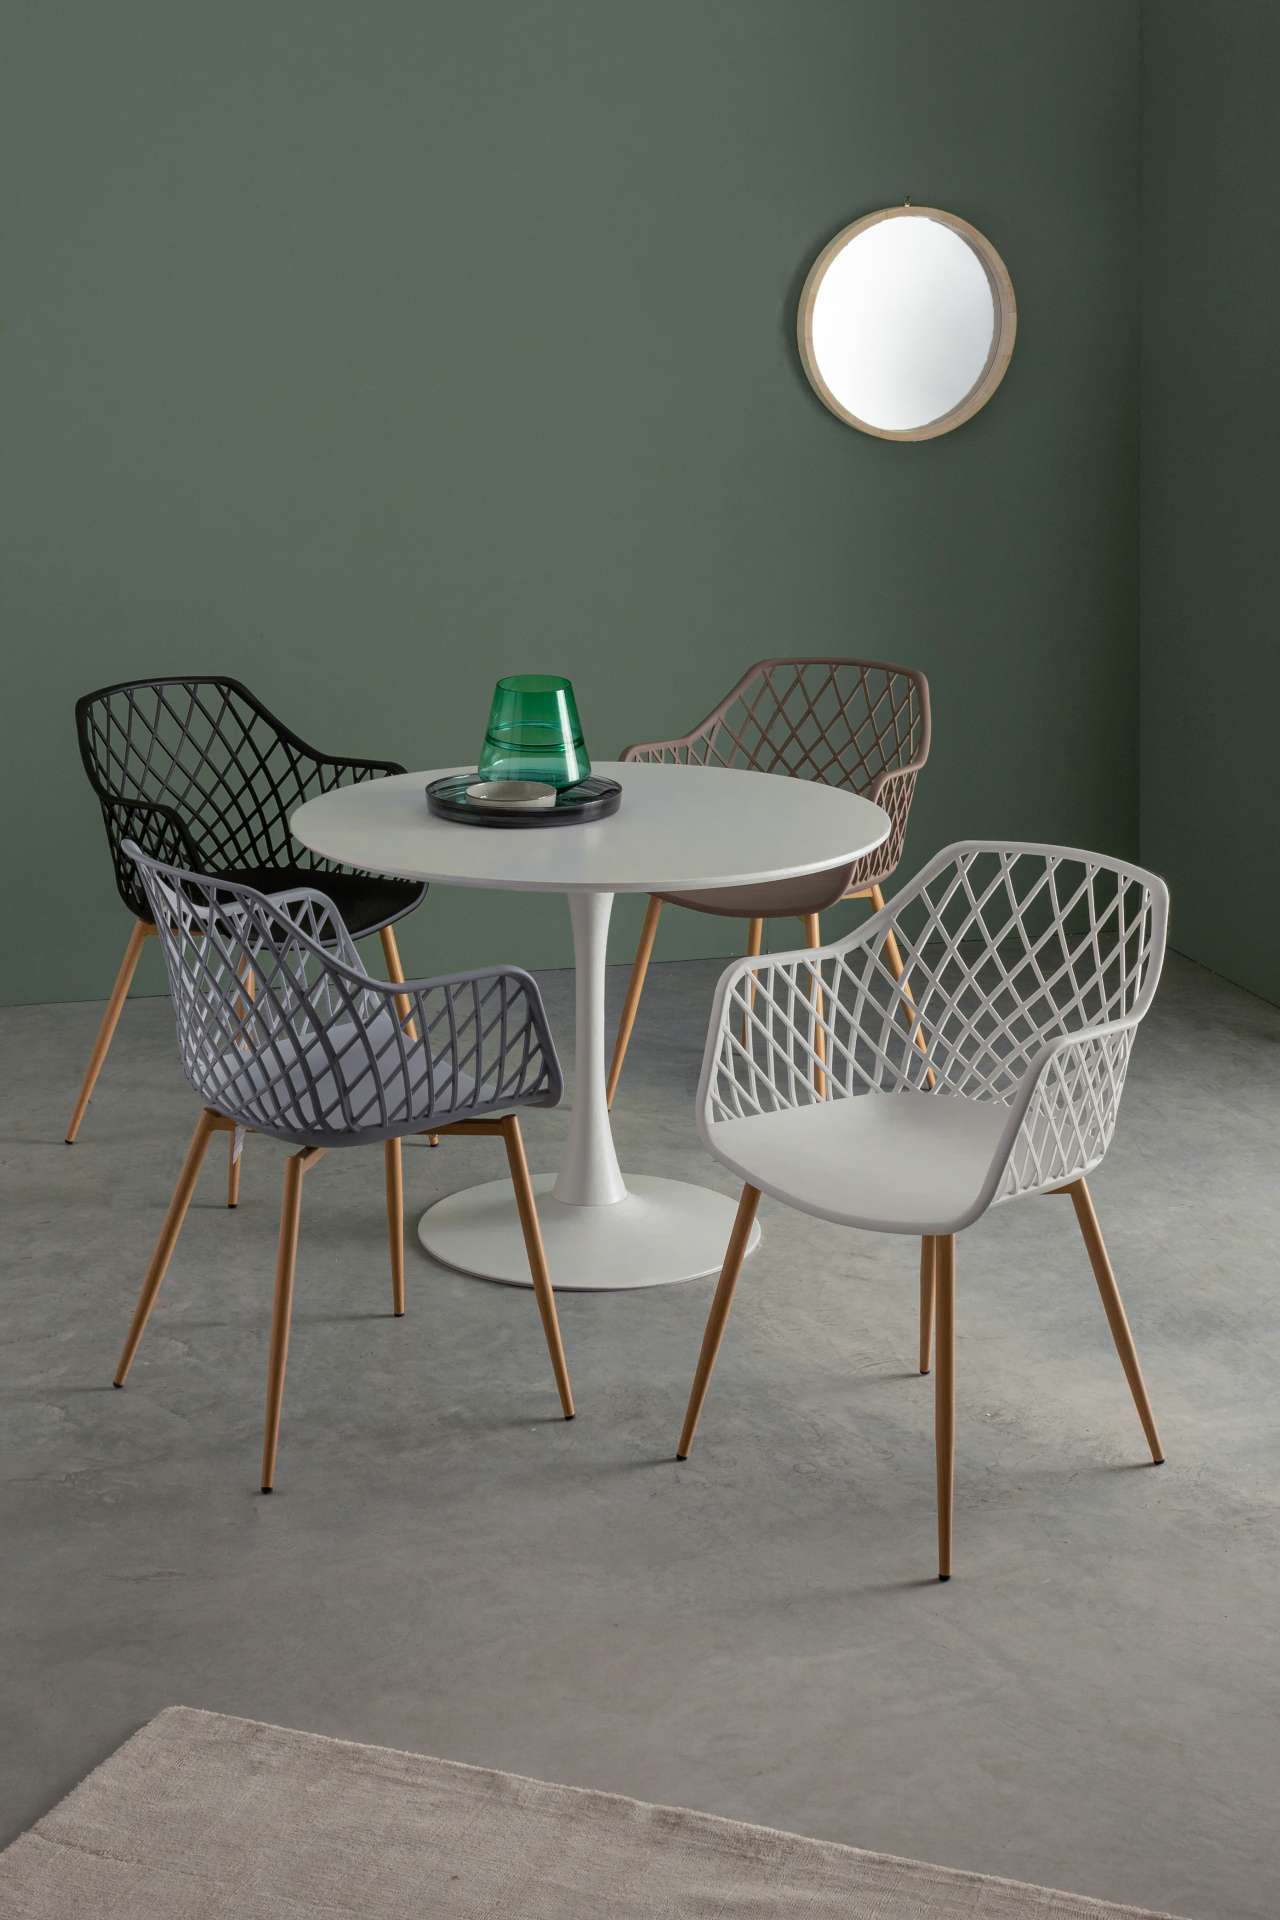 Der Stuhl Optik wurde aus Kunststoff gefertigt, welcher einen weißen Farbton besitzt. Das Gestell ist aus Metall und hat eine Holz-Optik. Das Design des Stuhls ist modern gehalten. Die Sitzhöhe beträgt 44 cm.